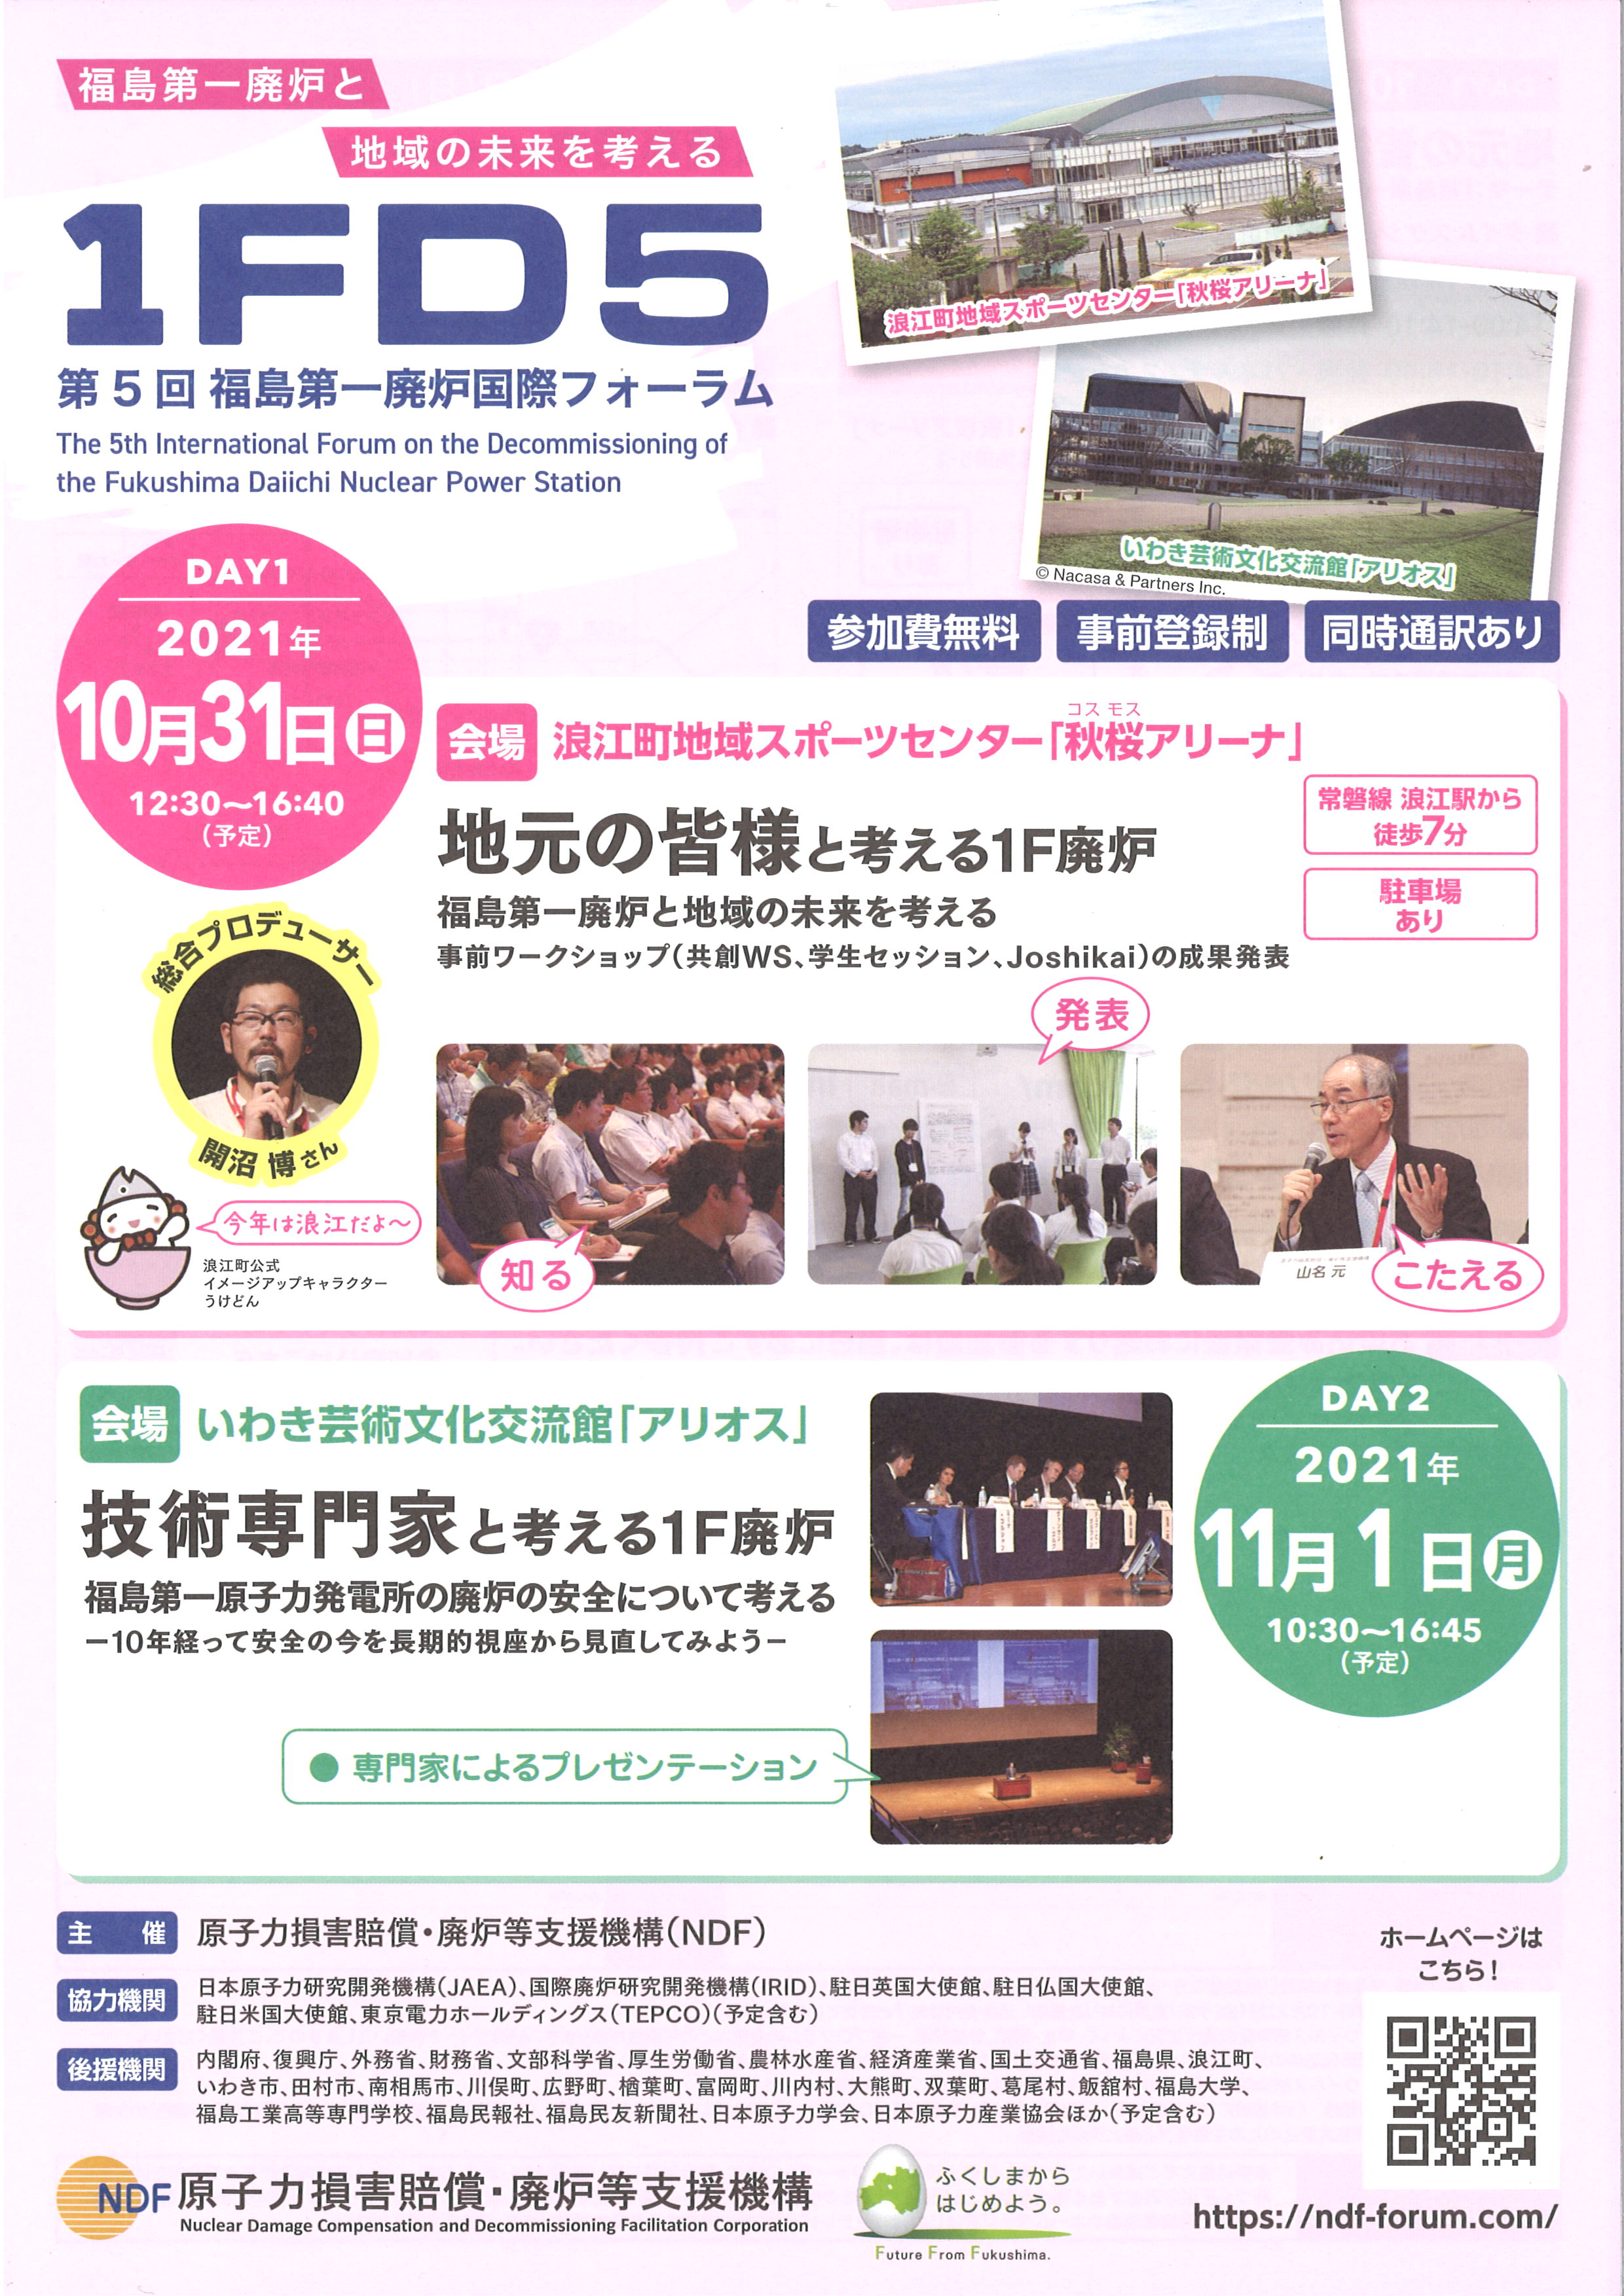 福島第一廃炉国際フォーラムの開催について